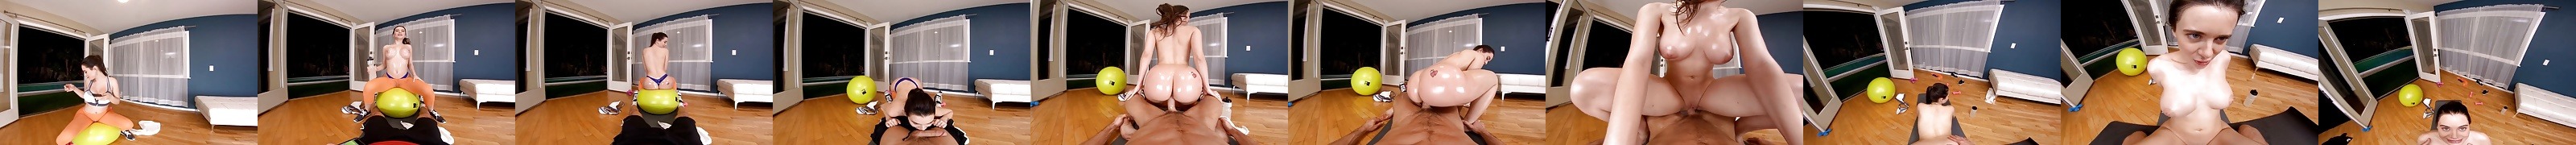 Порно видео Vr Секс в виртуальной реальности 360° Xhamster